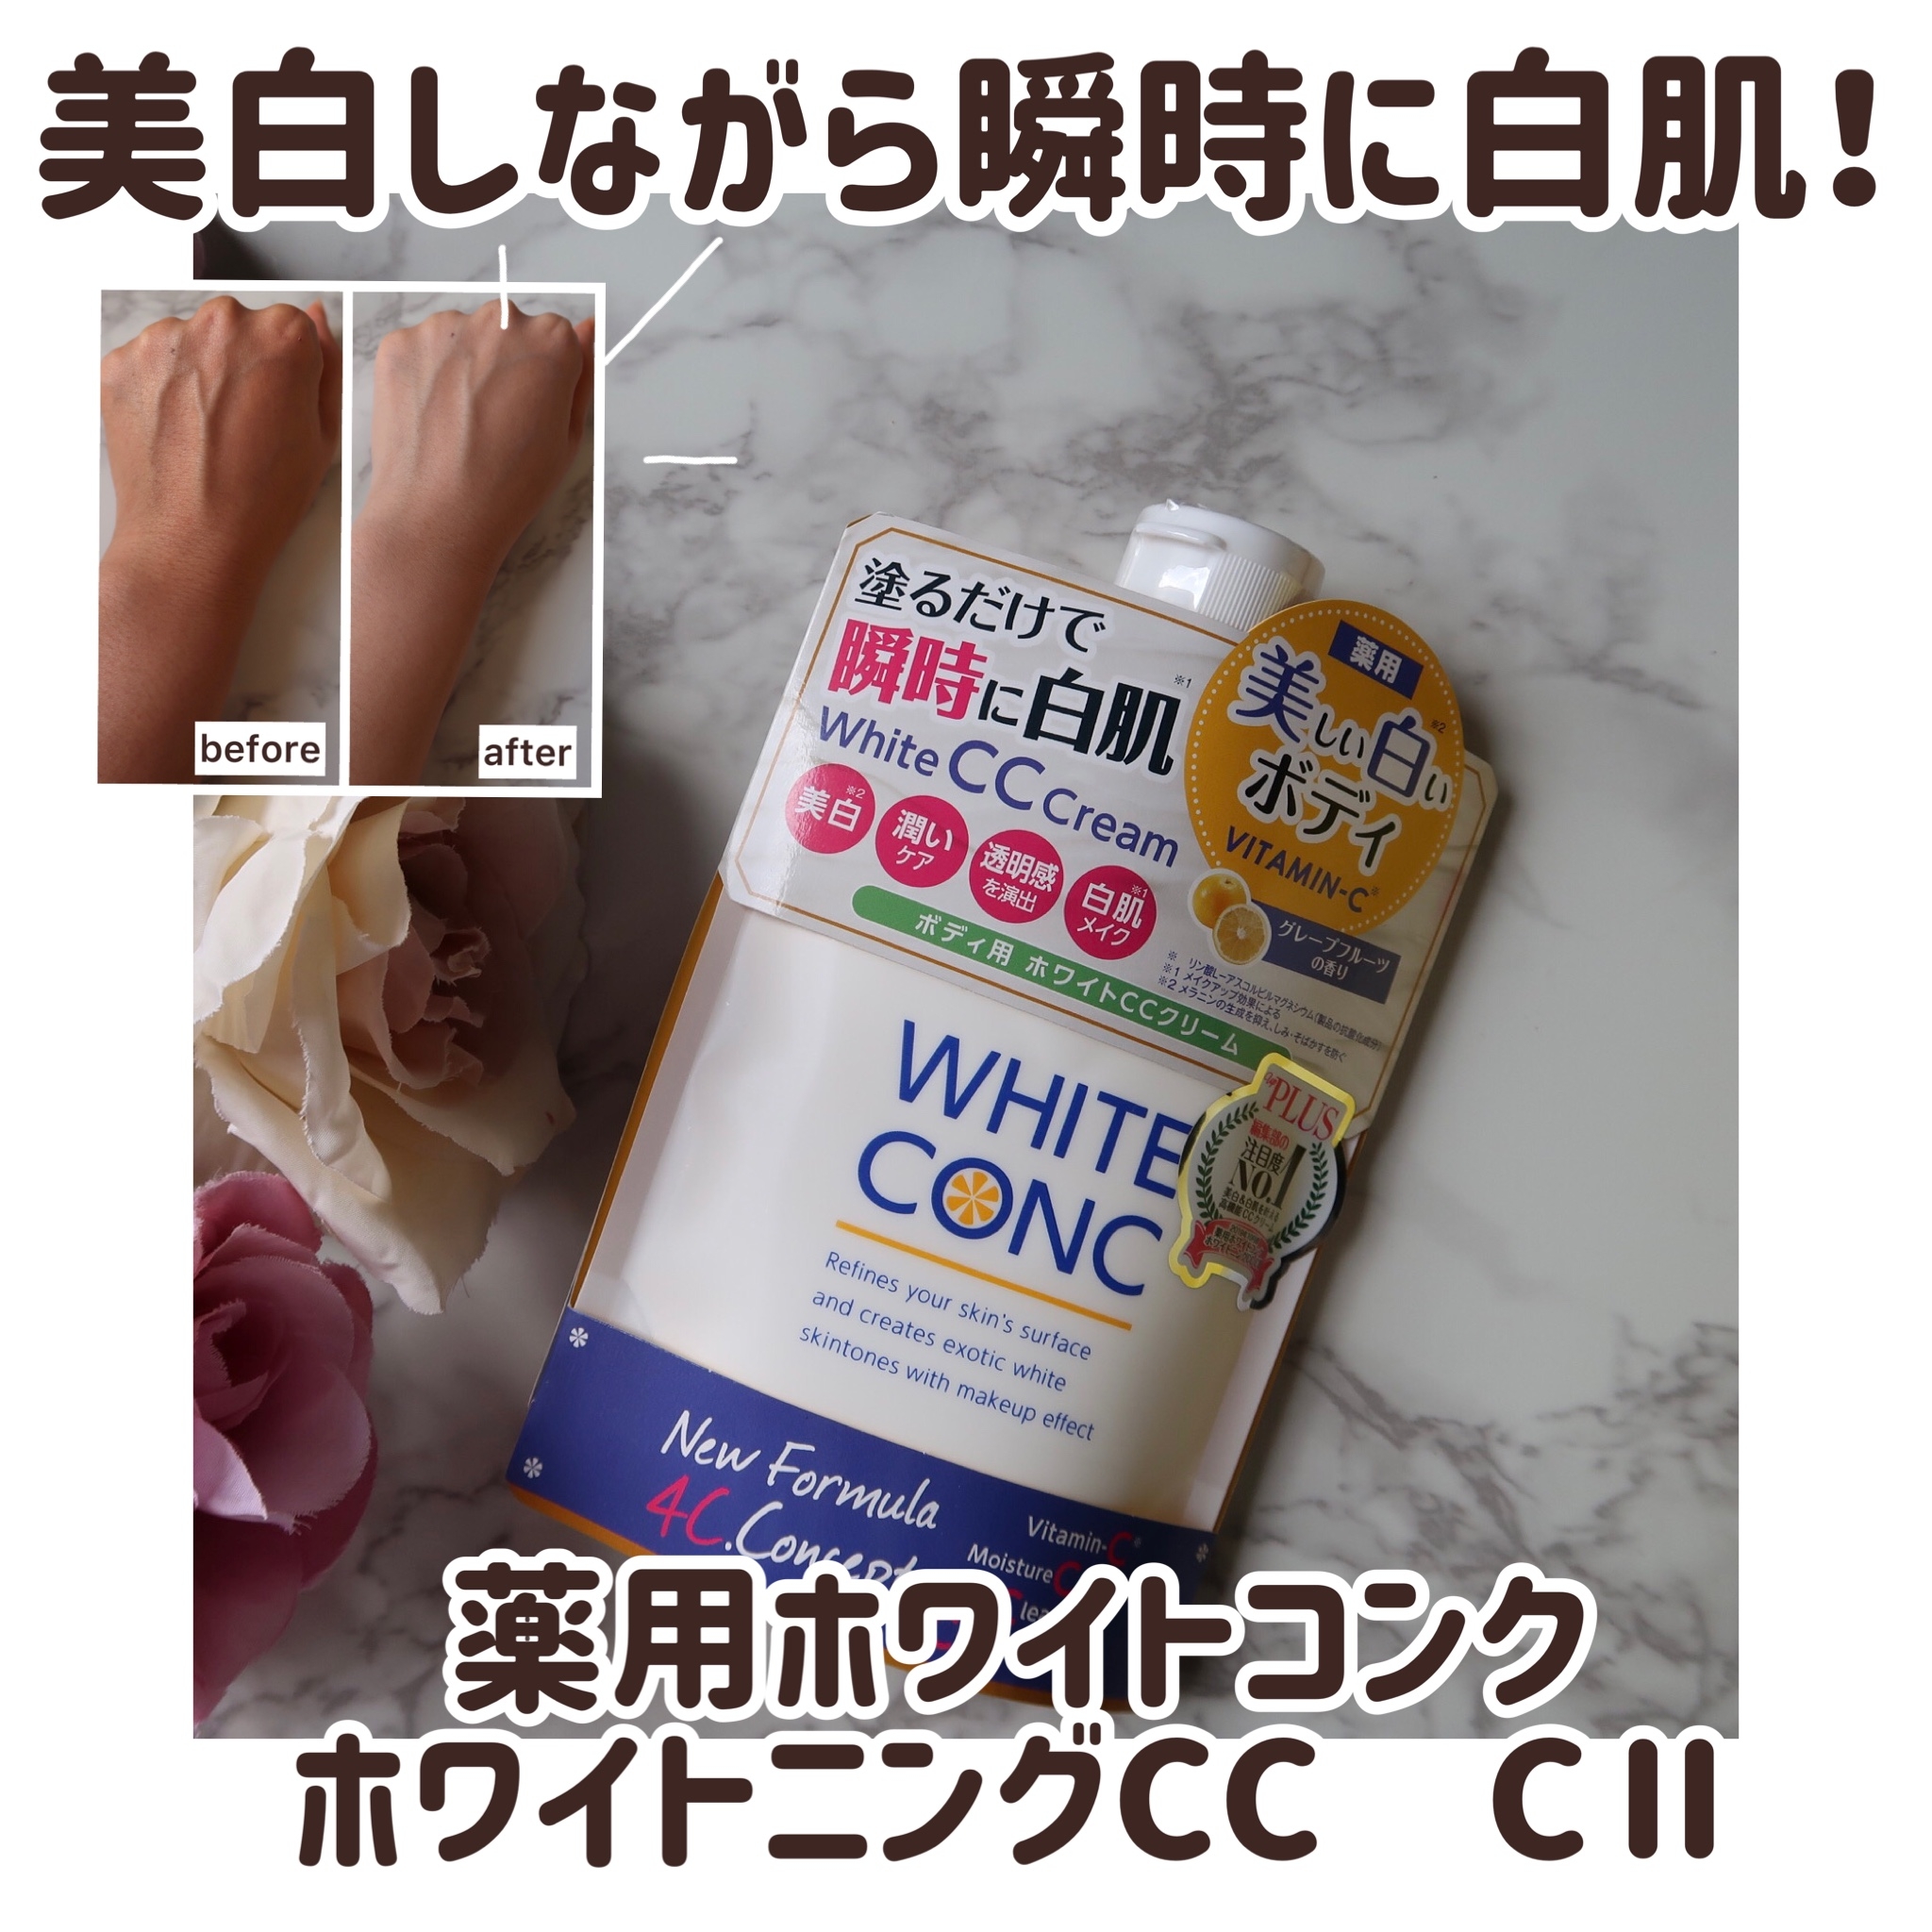 white conc(ホワイトコンク) ホワイトニングCC CIIの良い点・メリットに関するKIMIKAさんの口コミ画像1